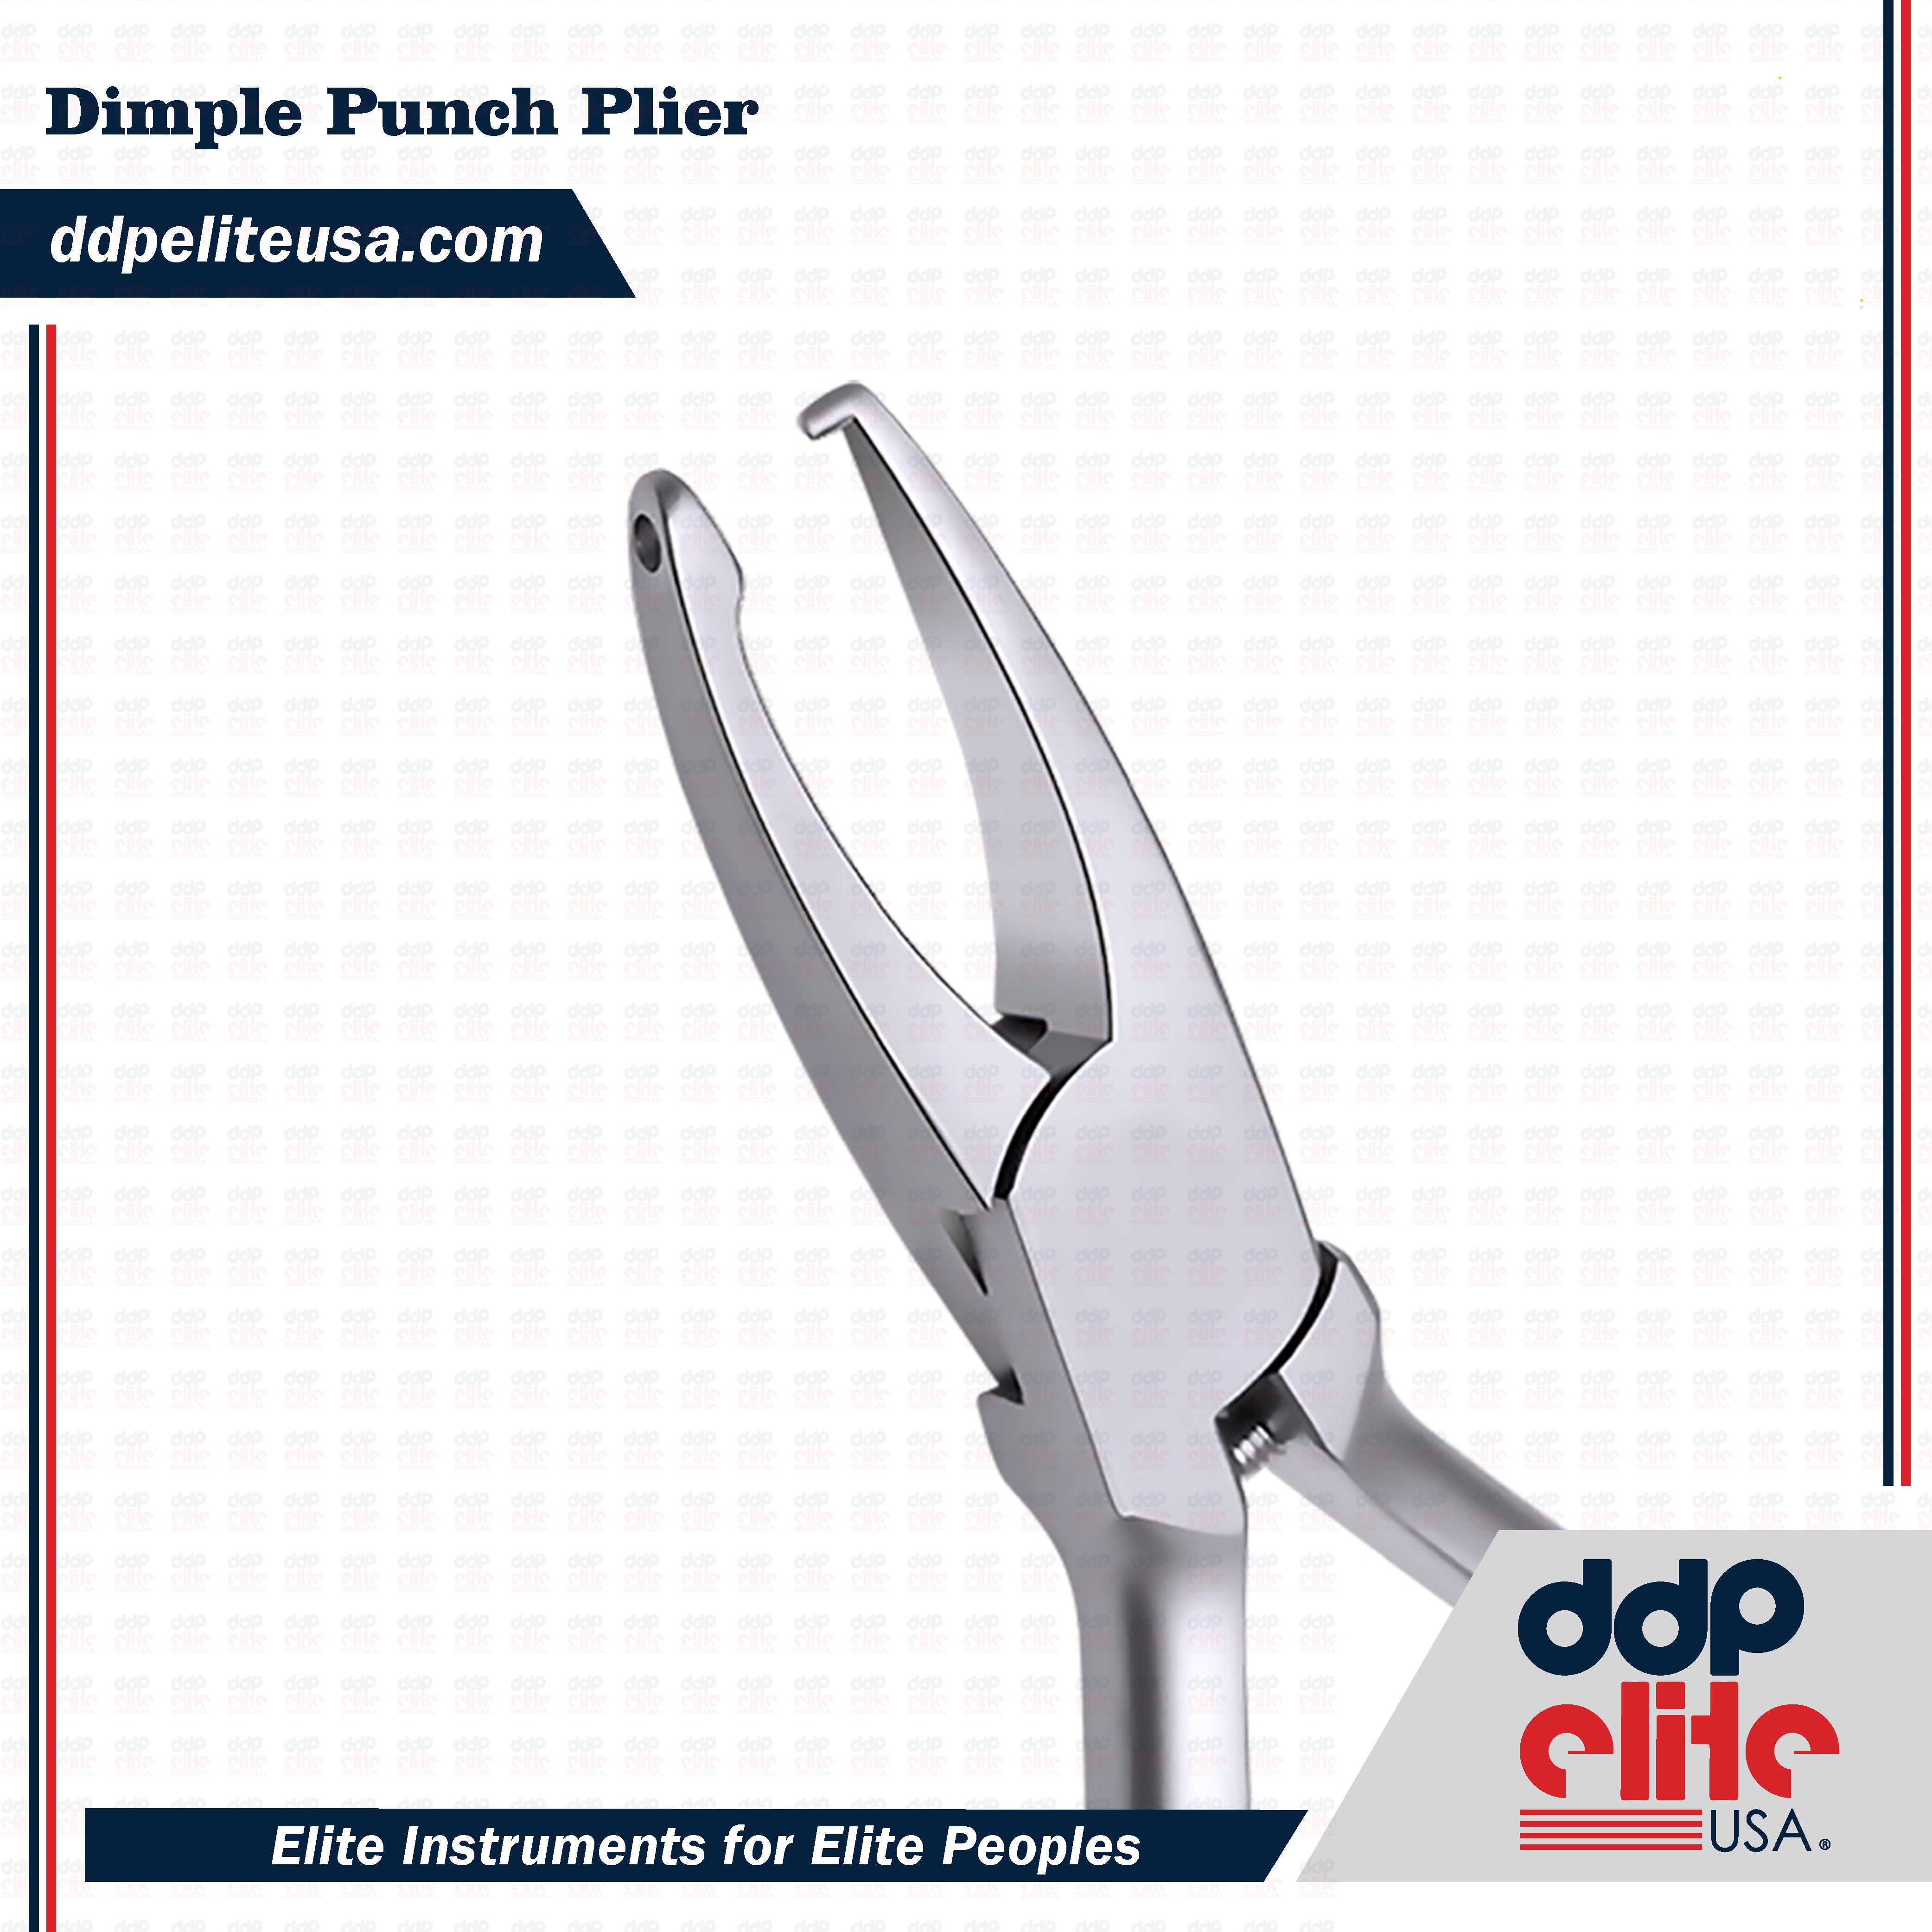 Dimple Punch Plier